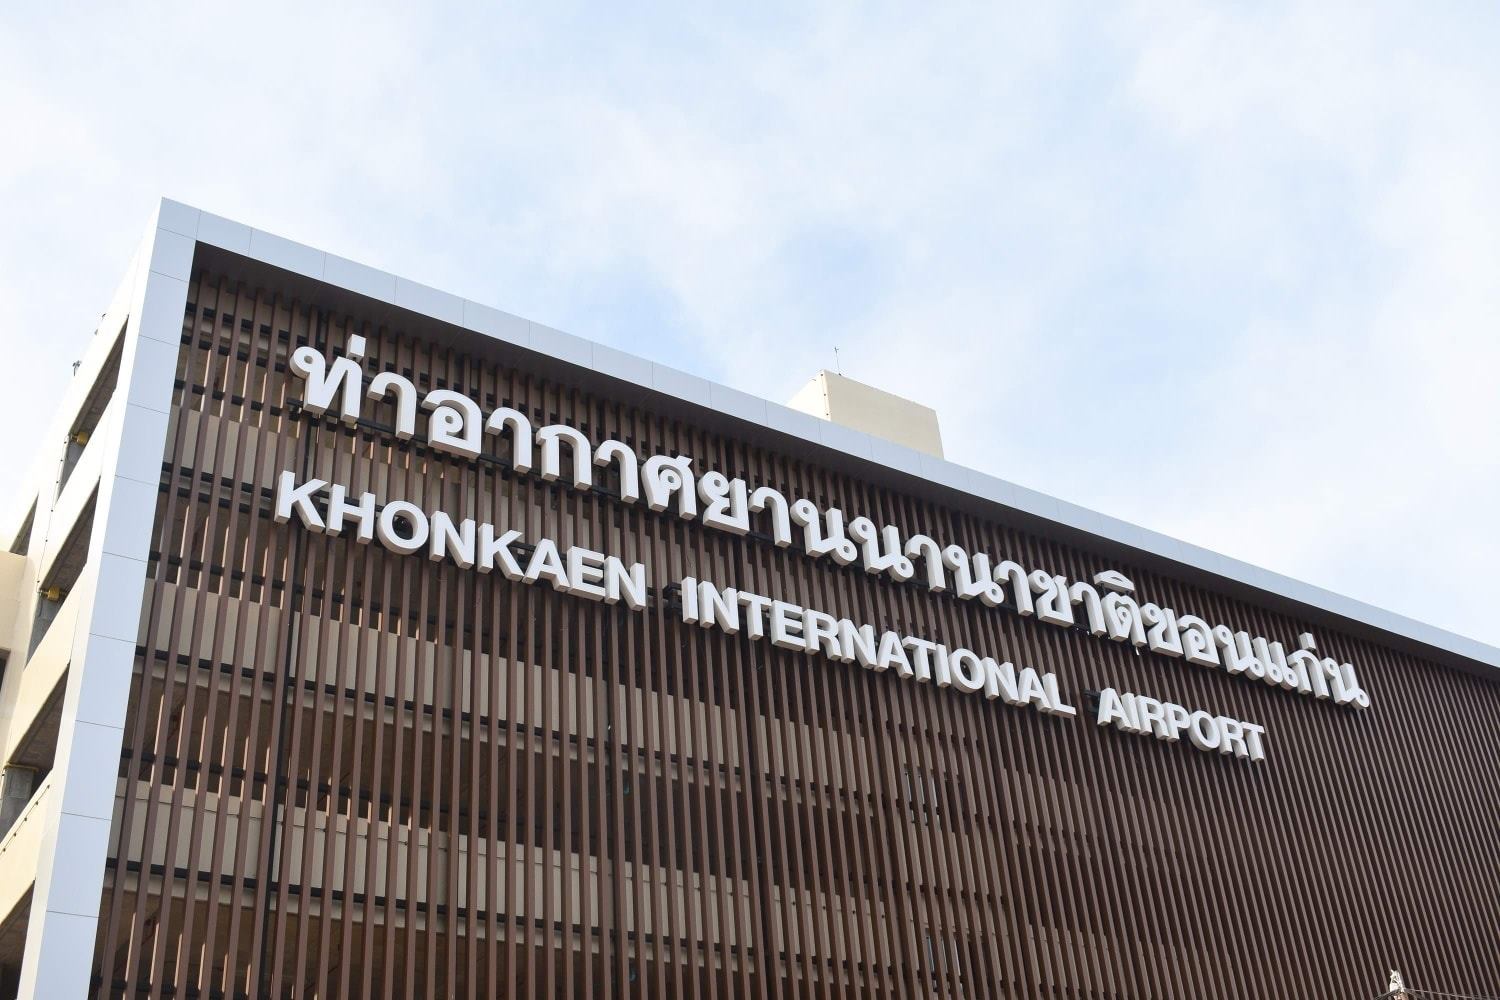 La nueva terminal de aeropuerto Khon Kaen de Tailandia contará con infraestructuras de telecomunicaciones de Televés